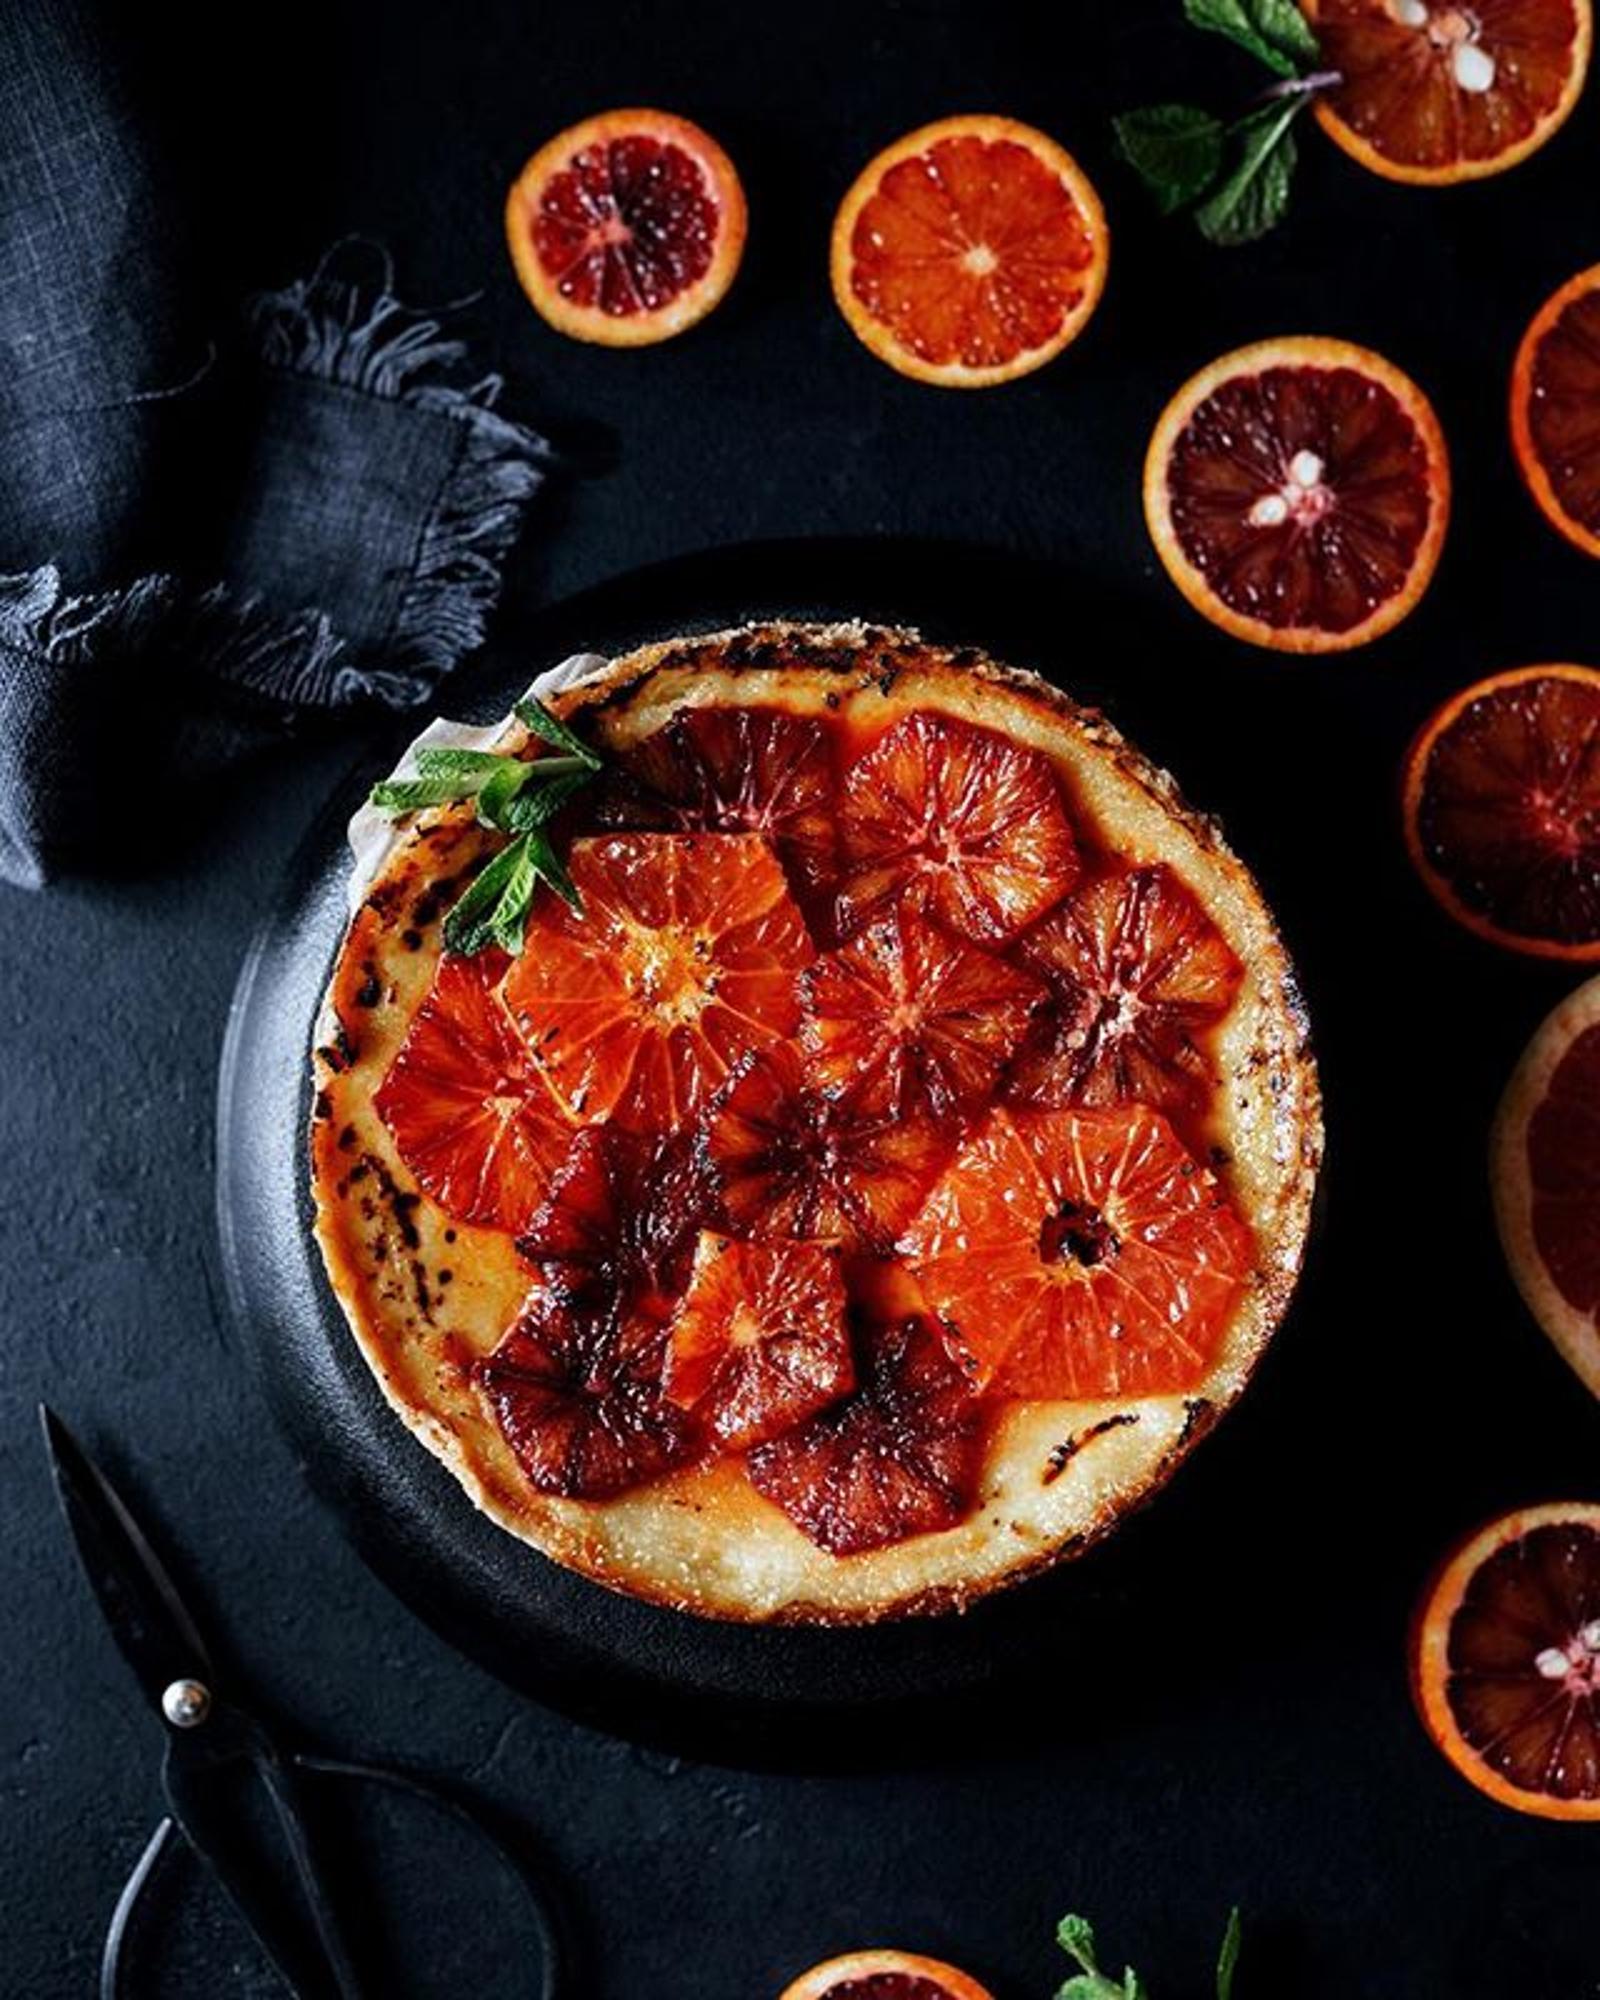 Пирог крем-брюле с красными апельсинами, автор фото и рецепта Ольга Аветисьянц: https://www.instagram.com/olga_avet/